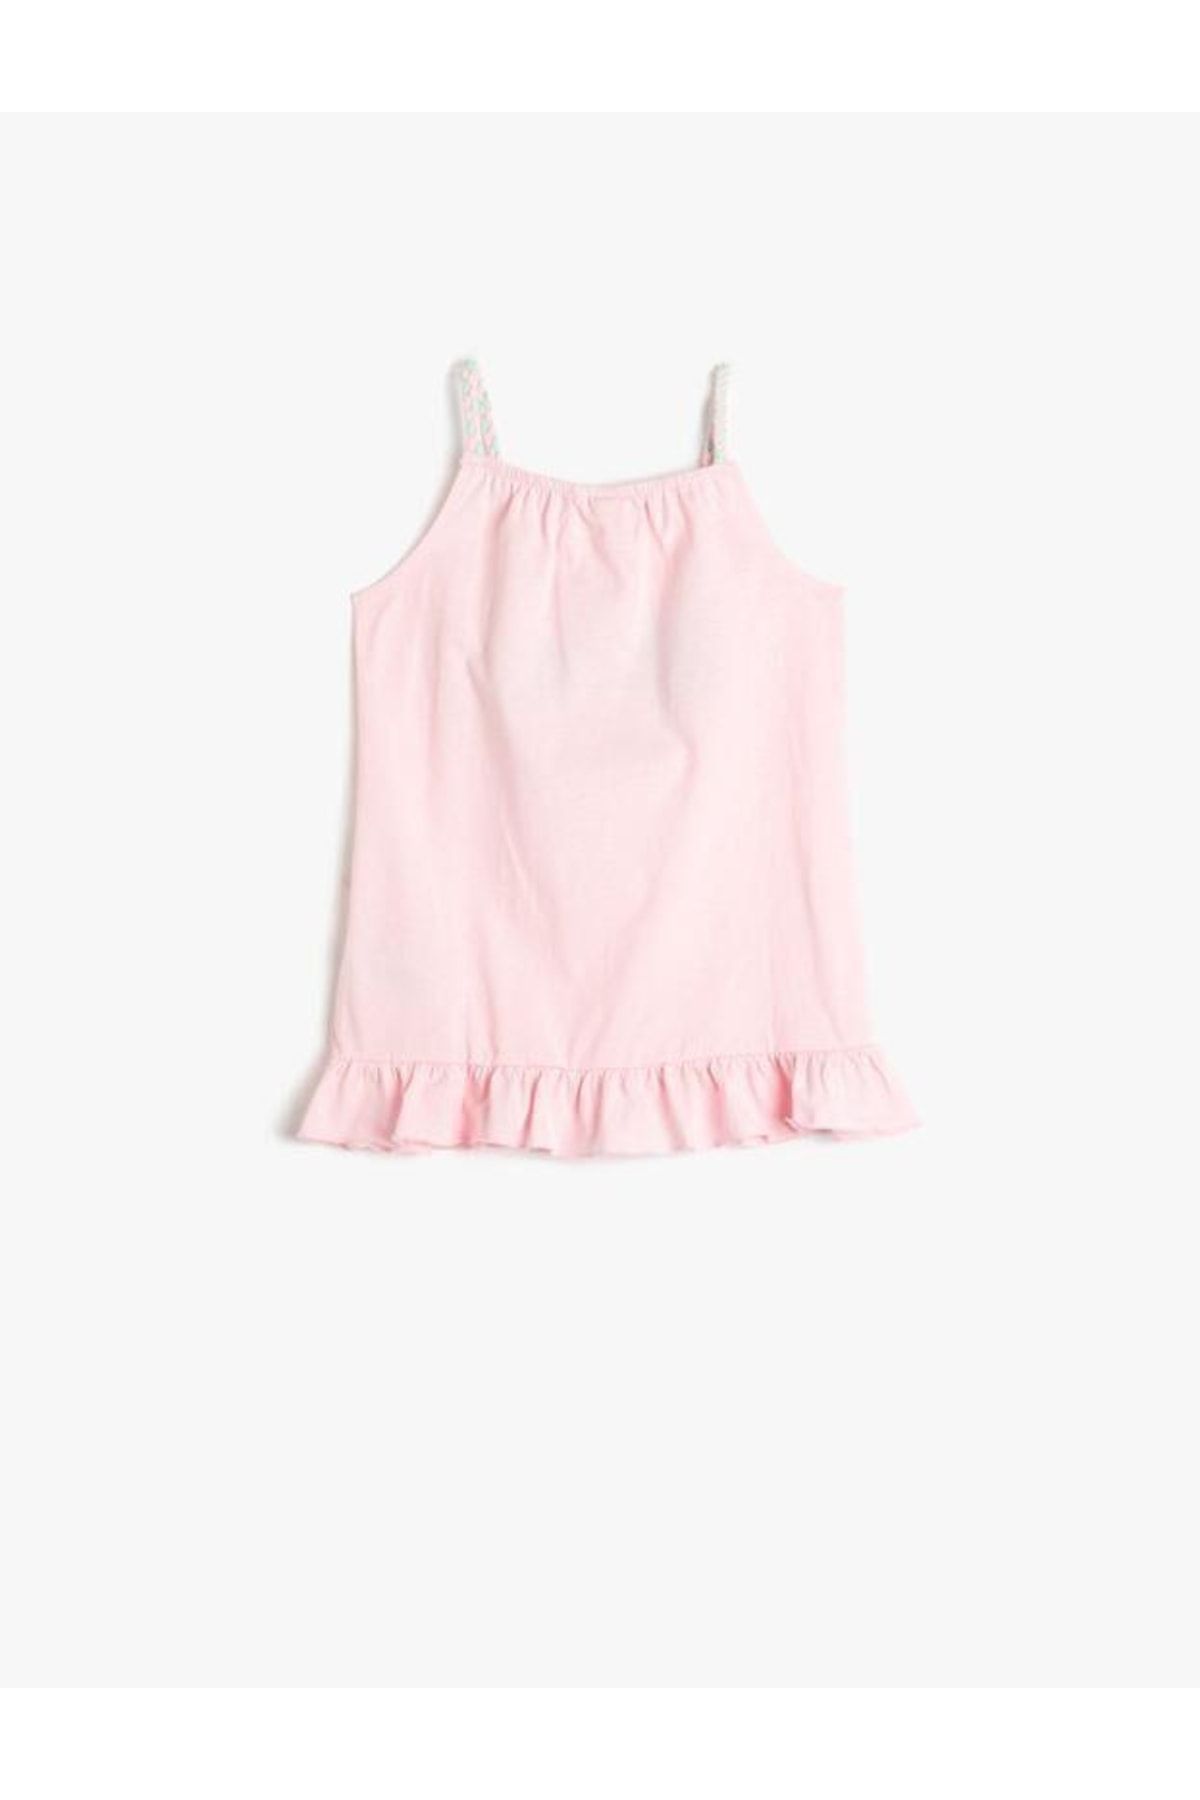 Koton Kız Bebek Elbise Askılı Baskılı Fırfır Detaylı Pamuklu